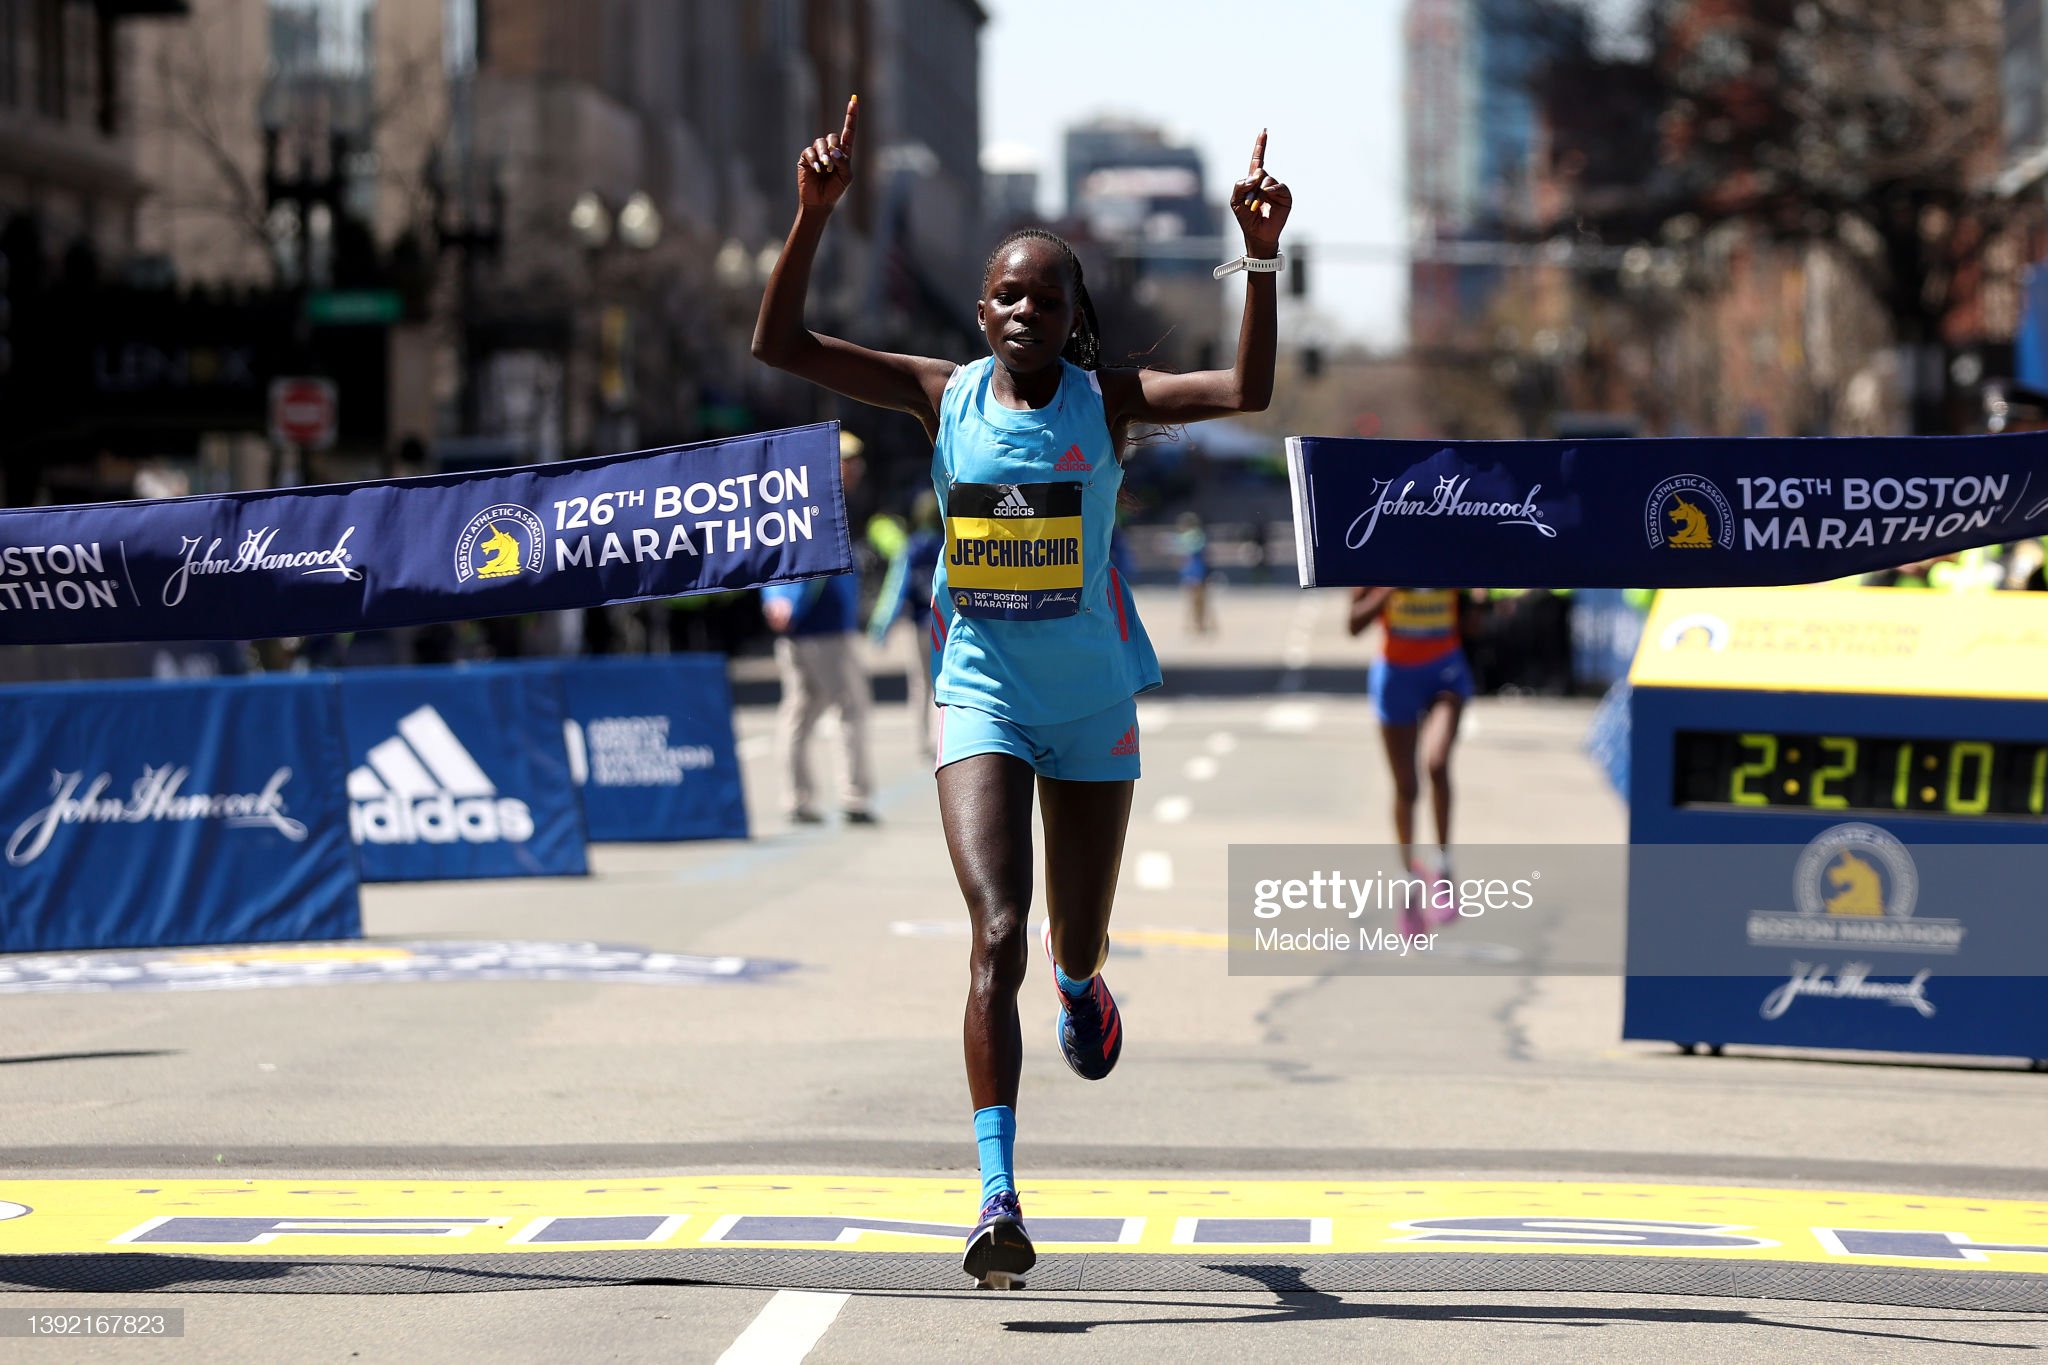 Pobednica 126. Bostonskog maratona 2022. - 18. april, Peres Džepčirčir (Kenija); 
  Foto: Getty Images